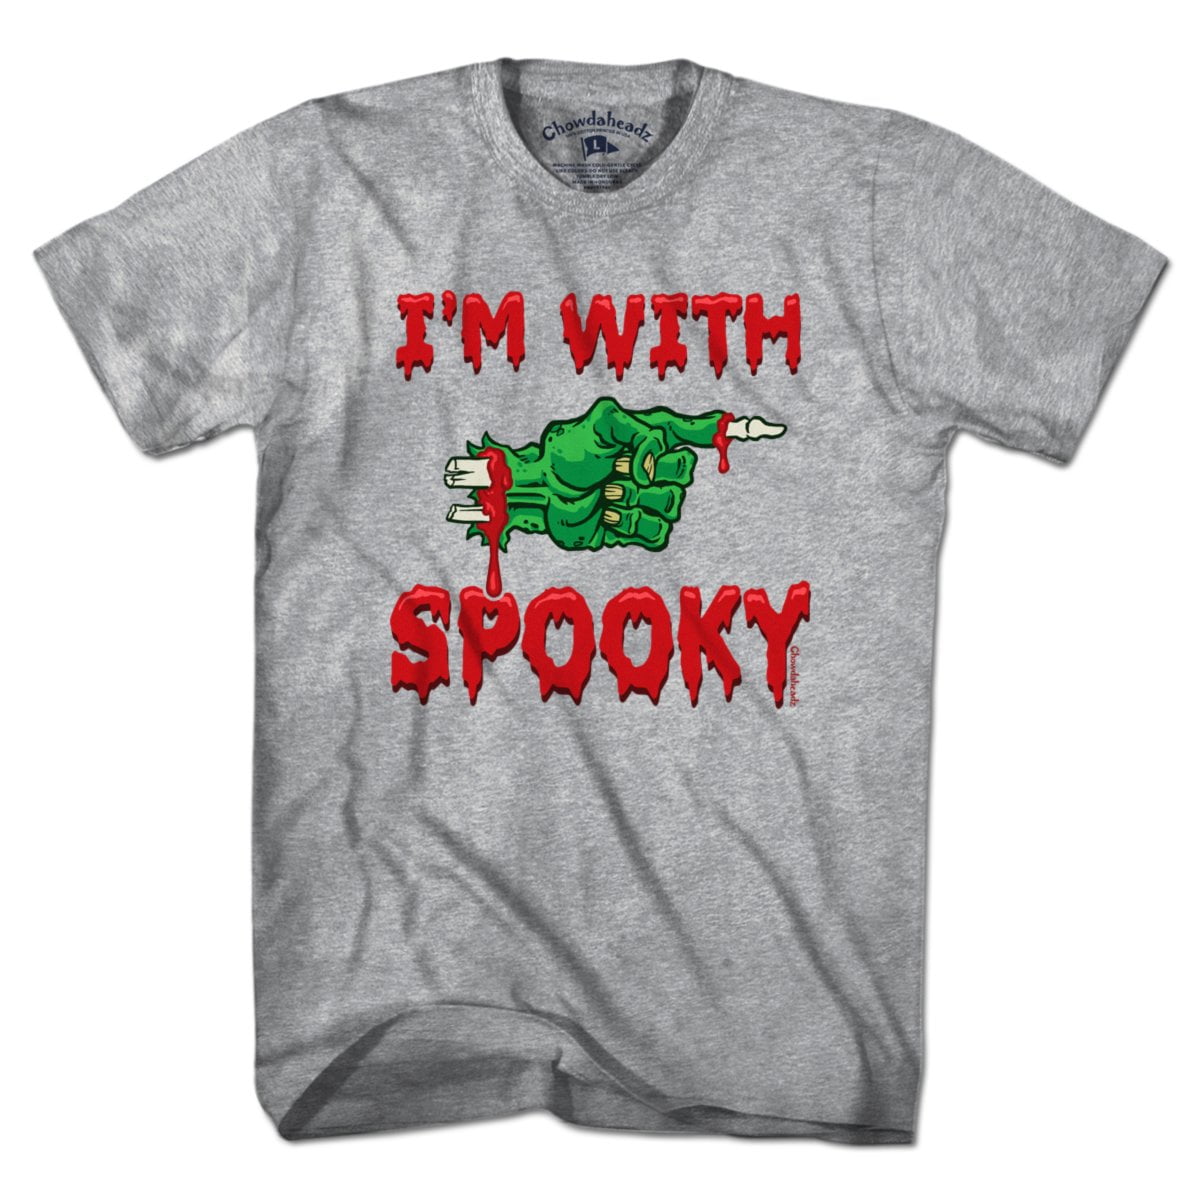 I'm With Spooky T-Shirt - Chowdaheadz